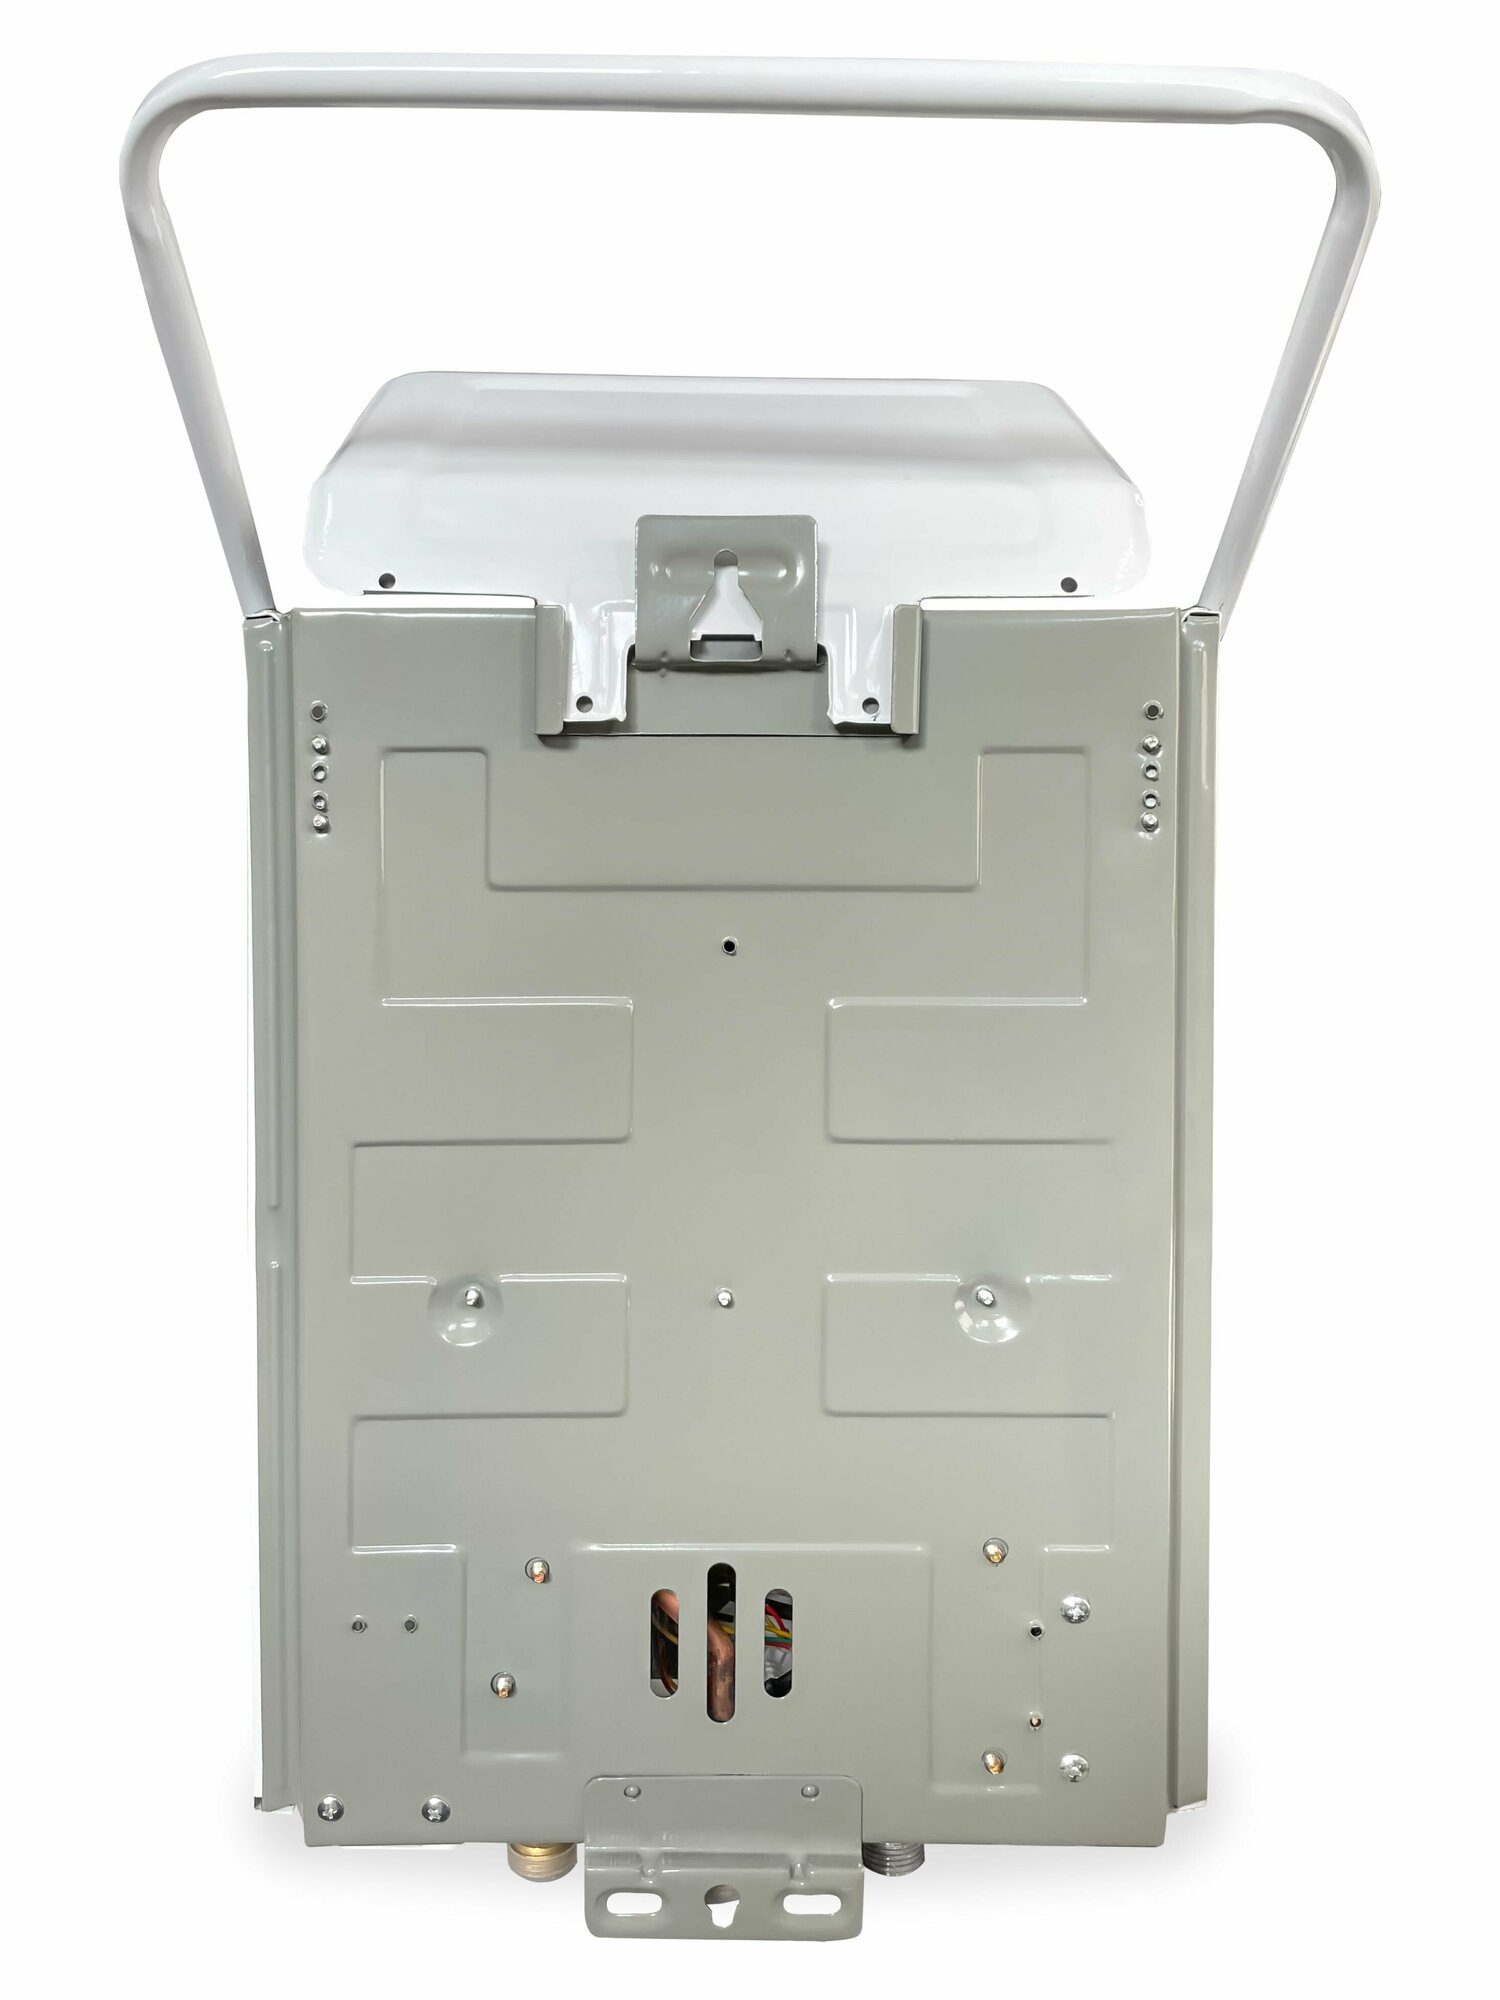 Газовый водонагреватель "Умница" модель ГК-5л/мин, бездымоходная, белый цвет панели - фотография № 2